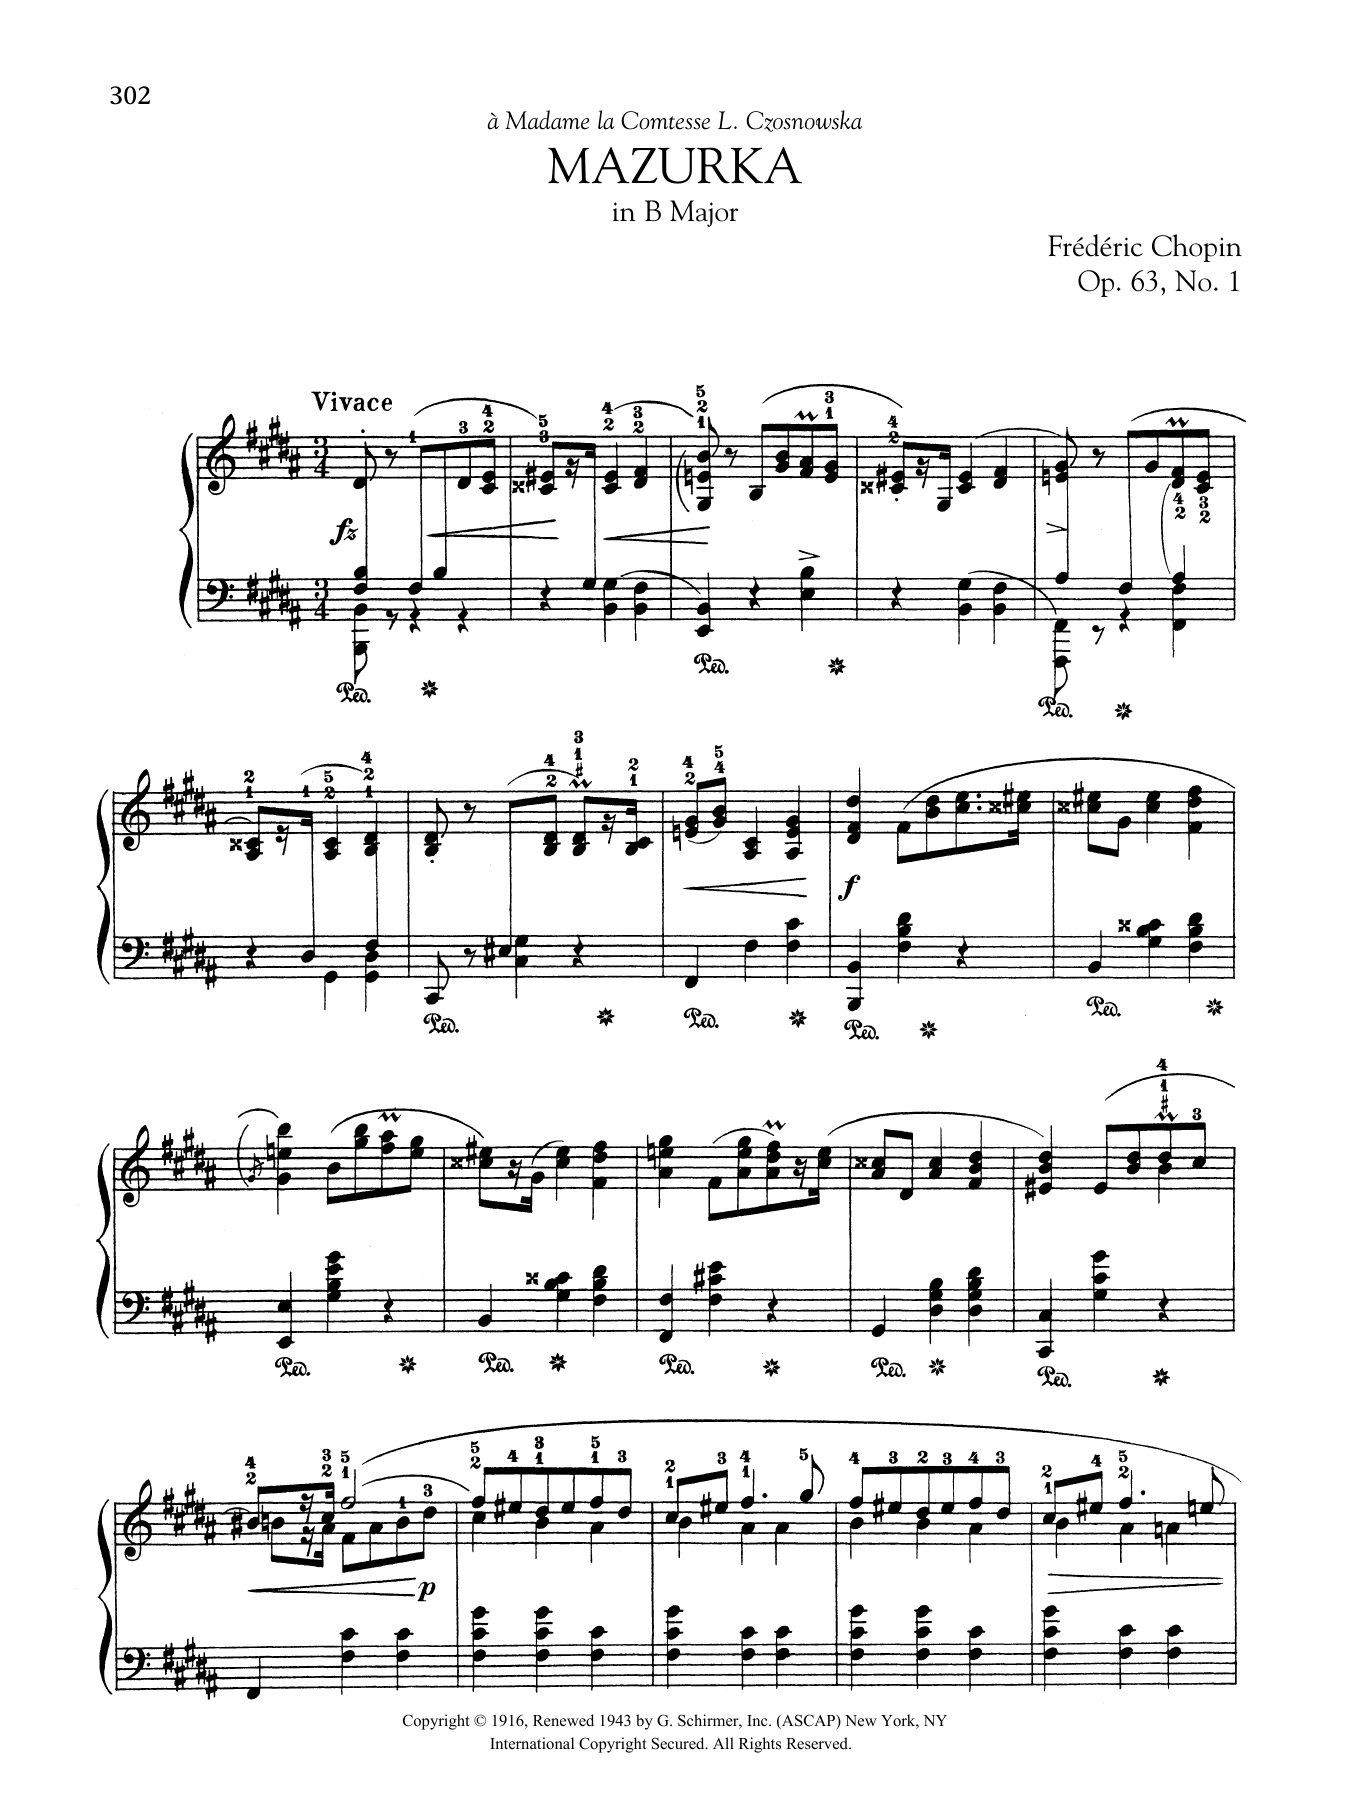 Download Frederic Chopin Mazurka in B Major, Op. 63, No. 1 Sheet Music